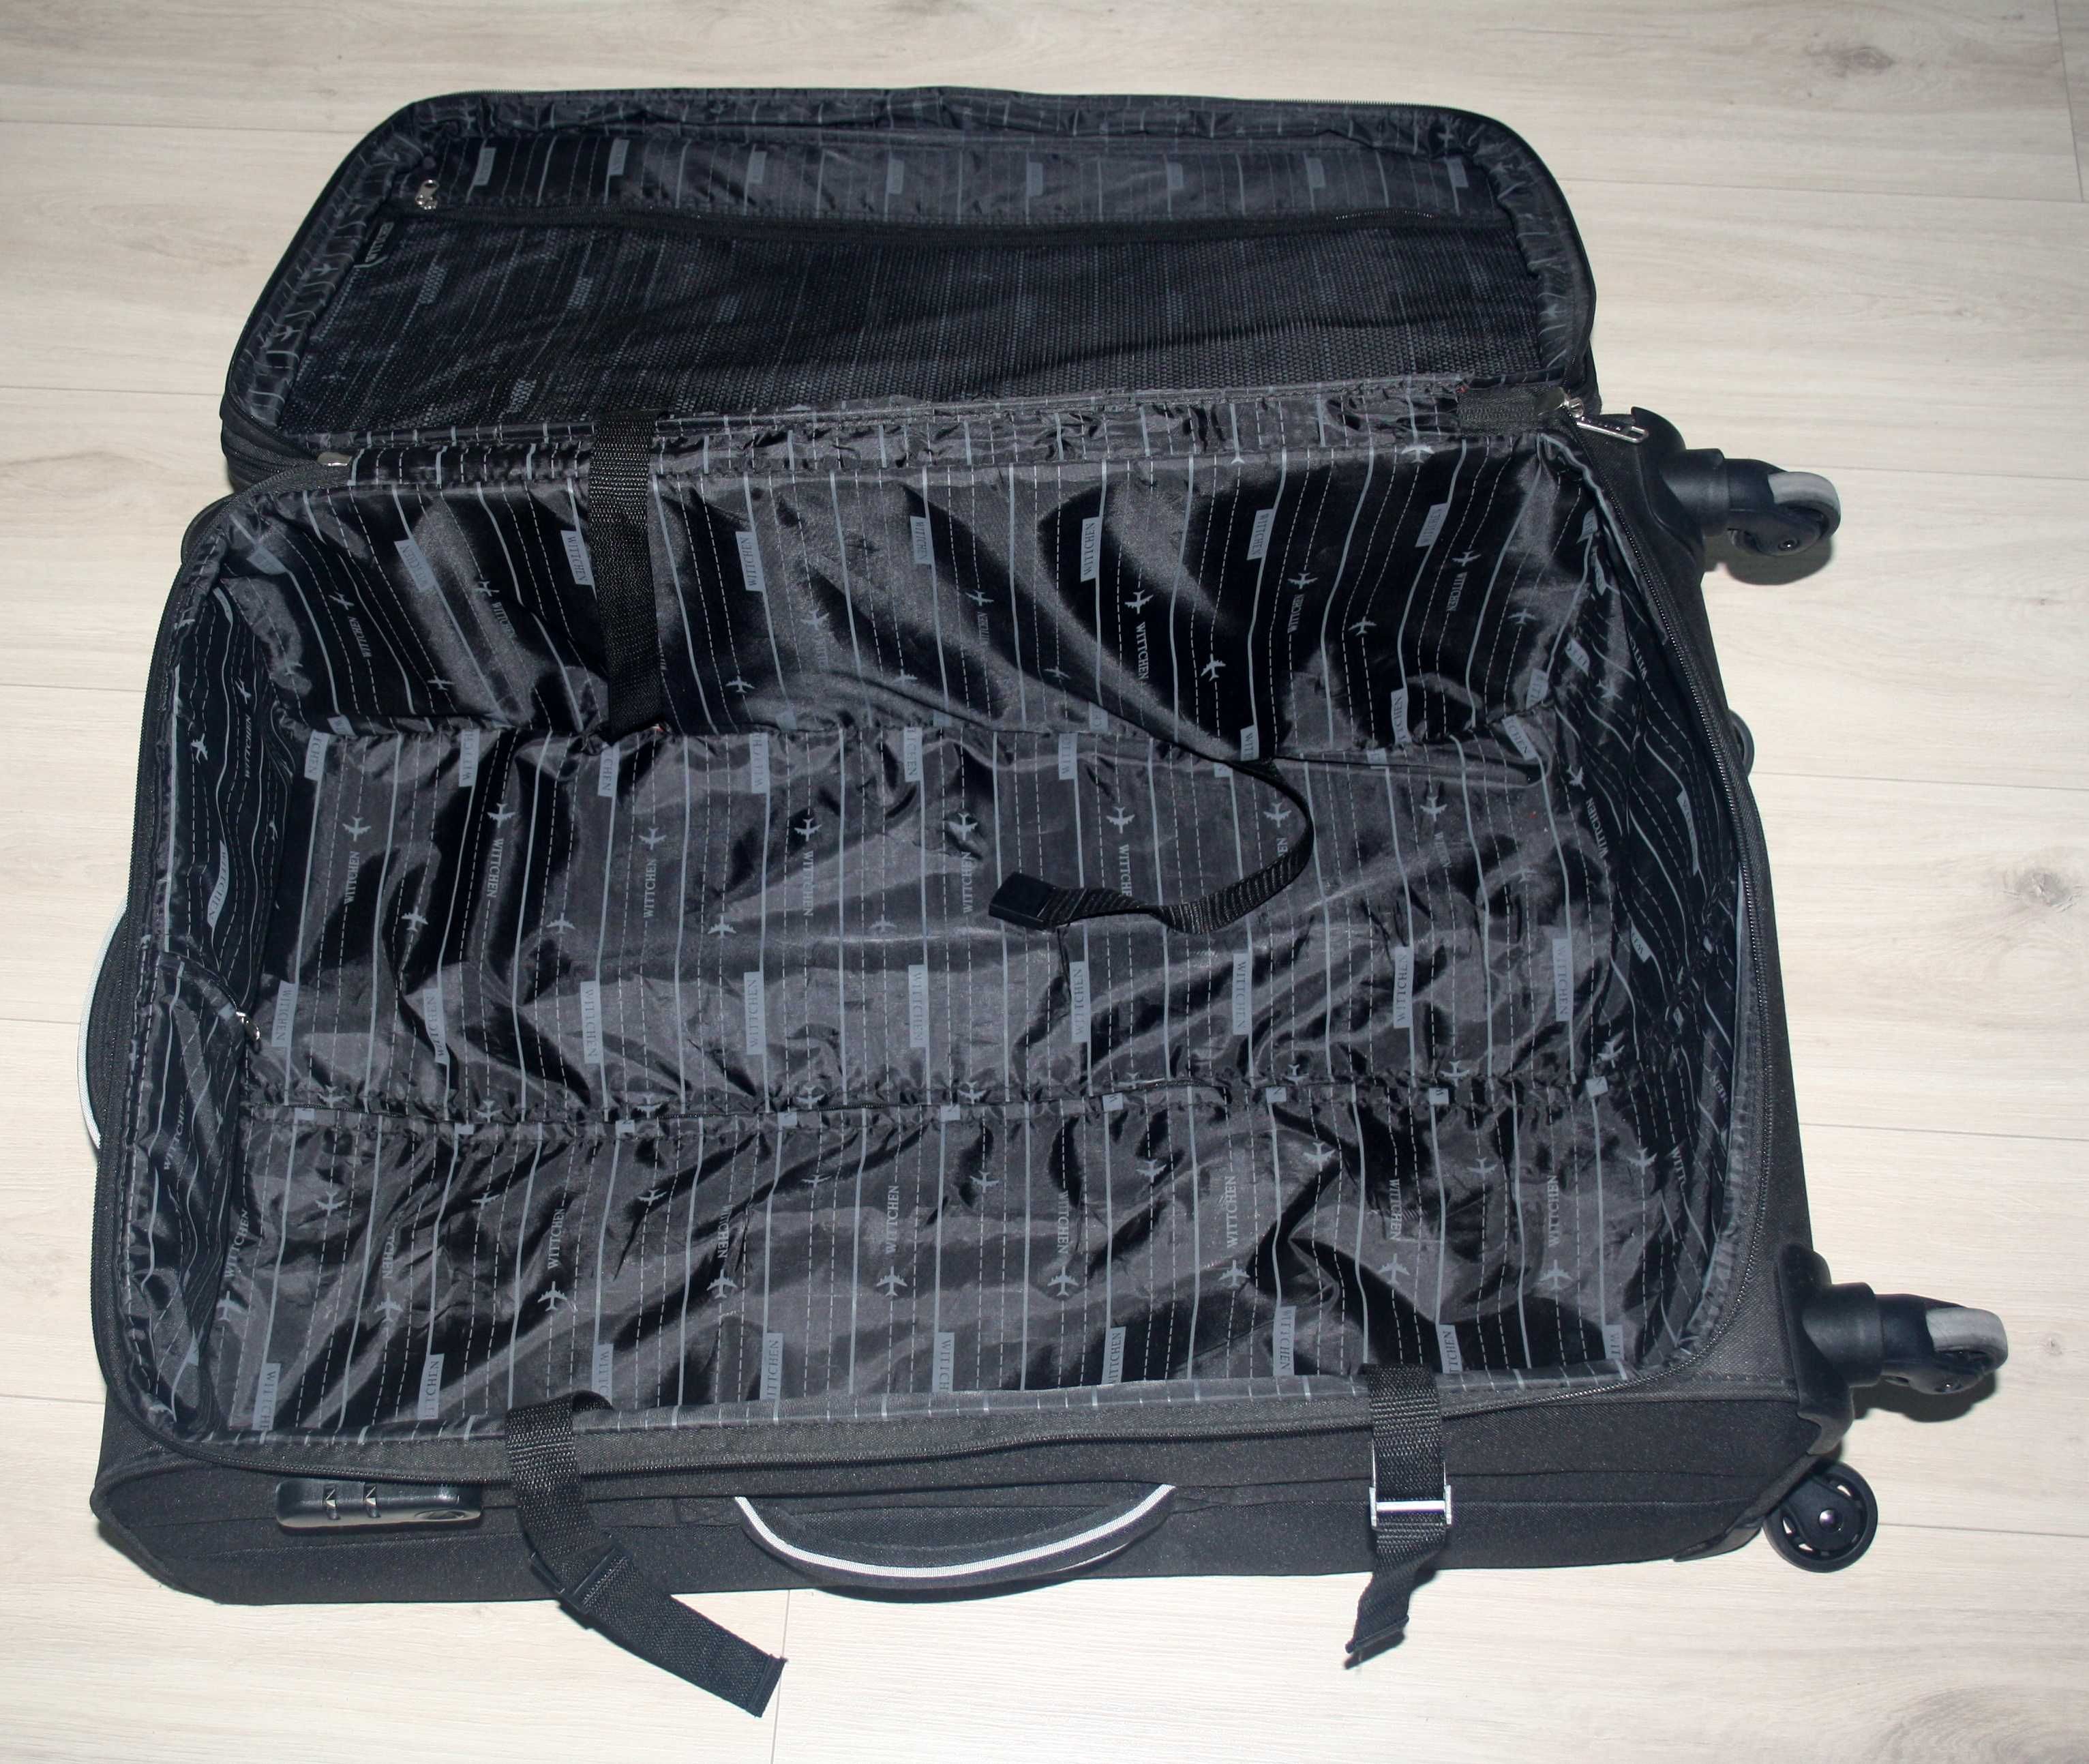 Duża walizka Wittchen